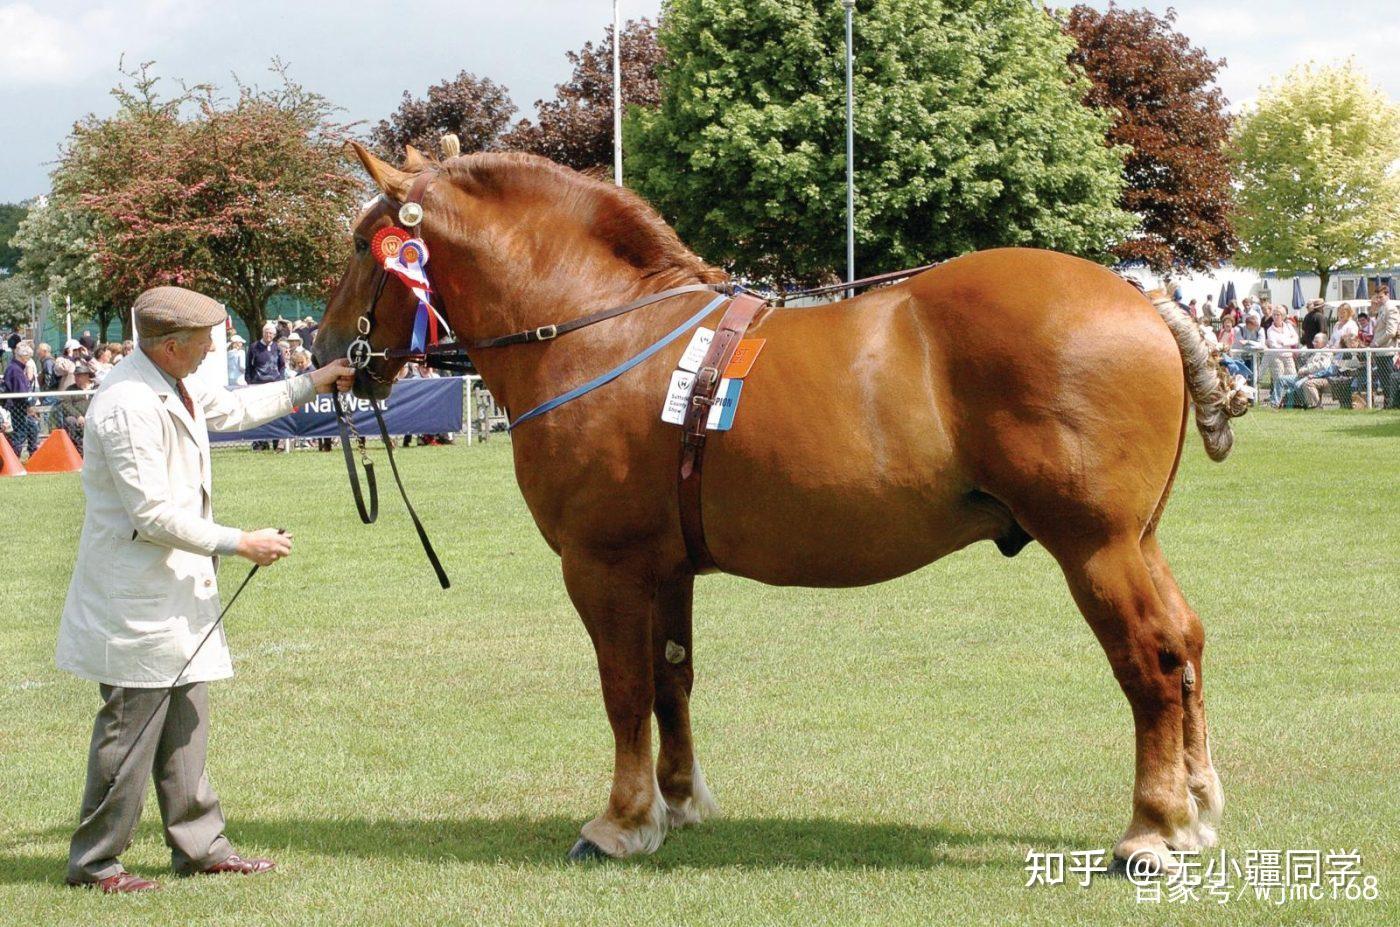 在16 世纪和 17 世纪,由于英国对马车的需求增加了,这个品种的马被